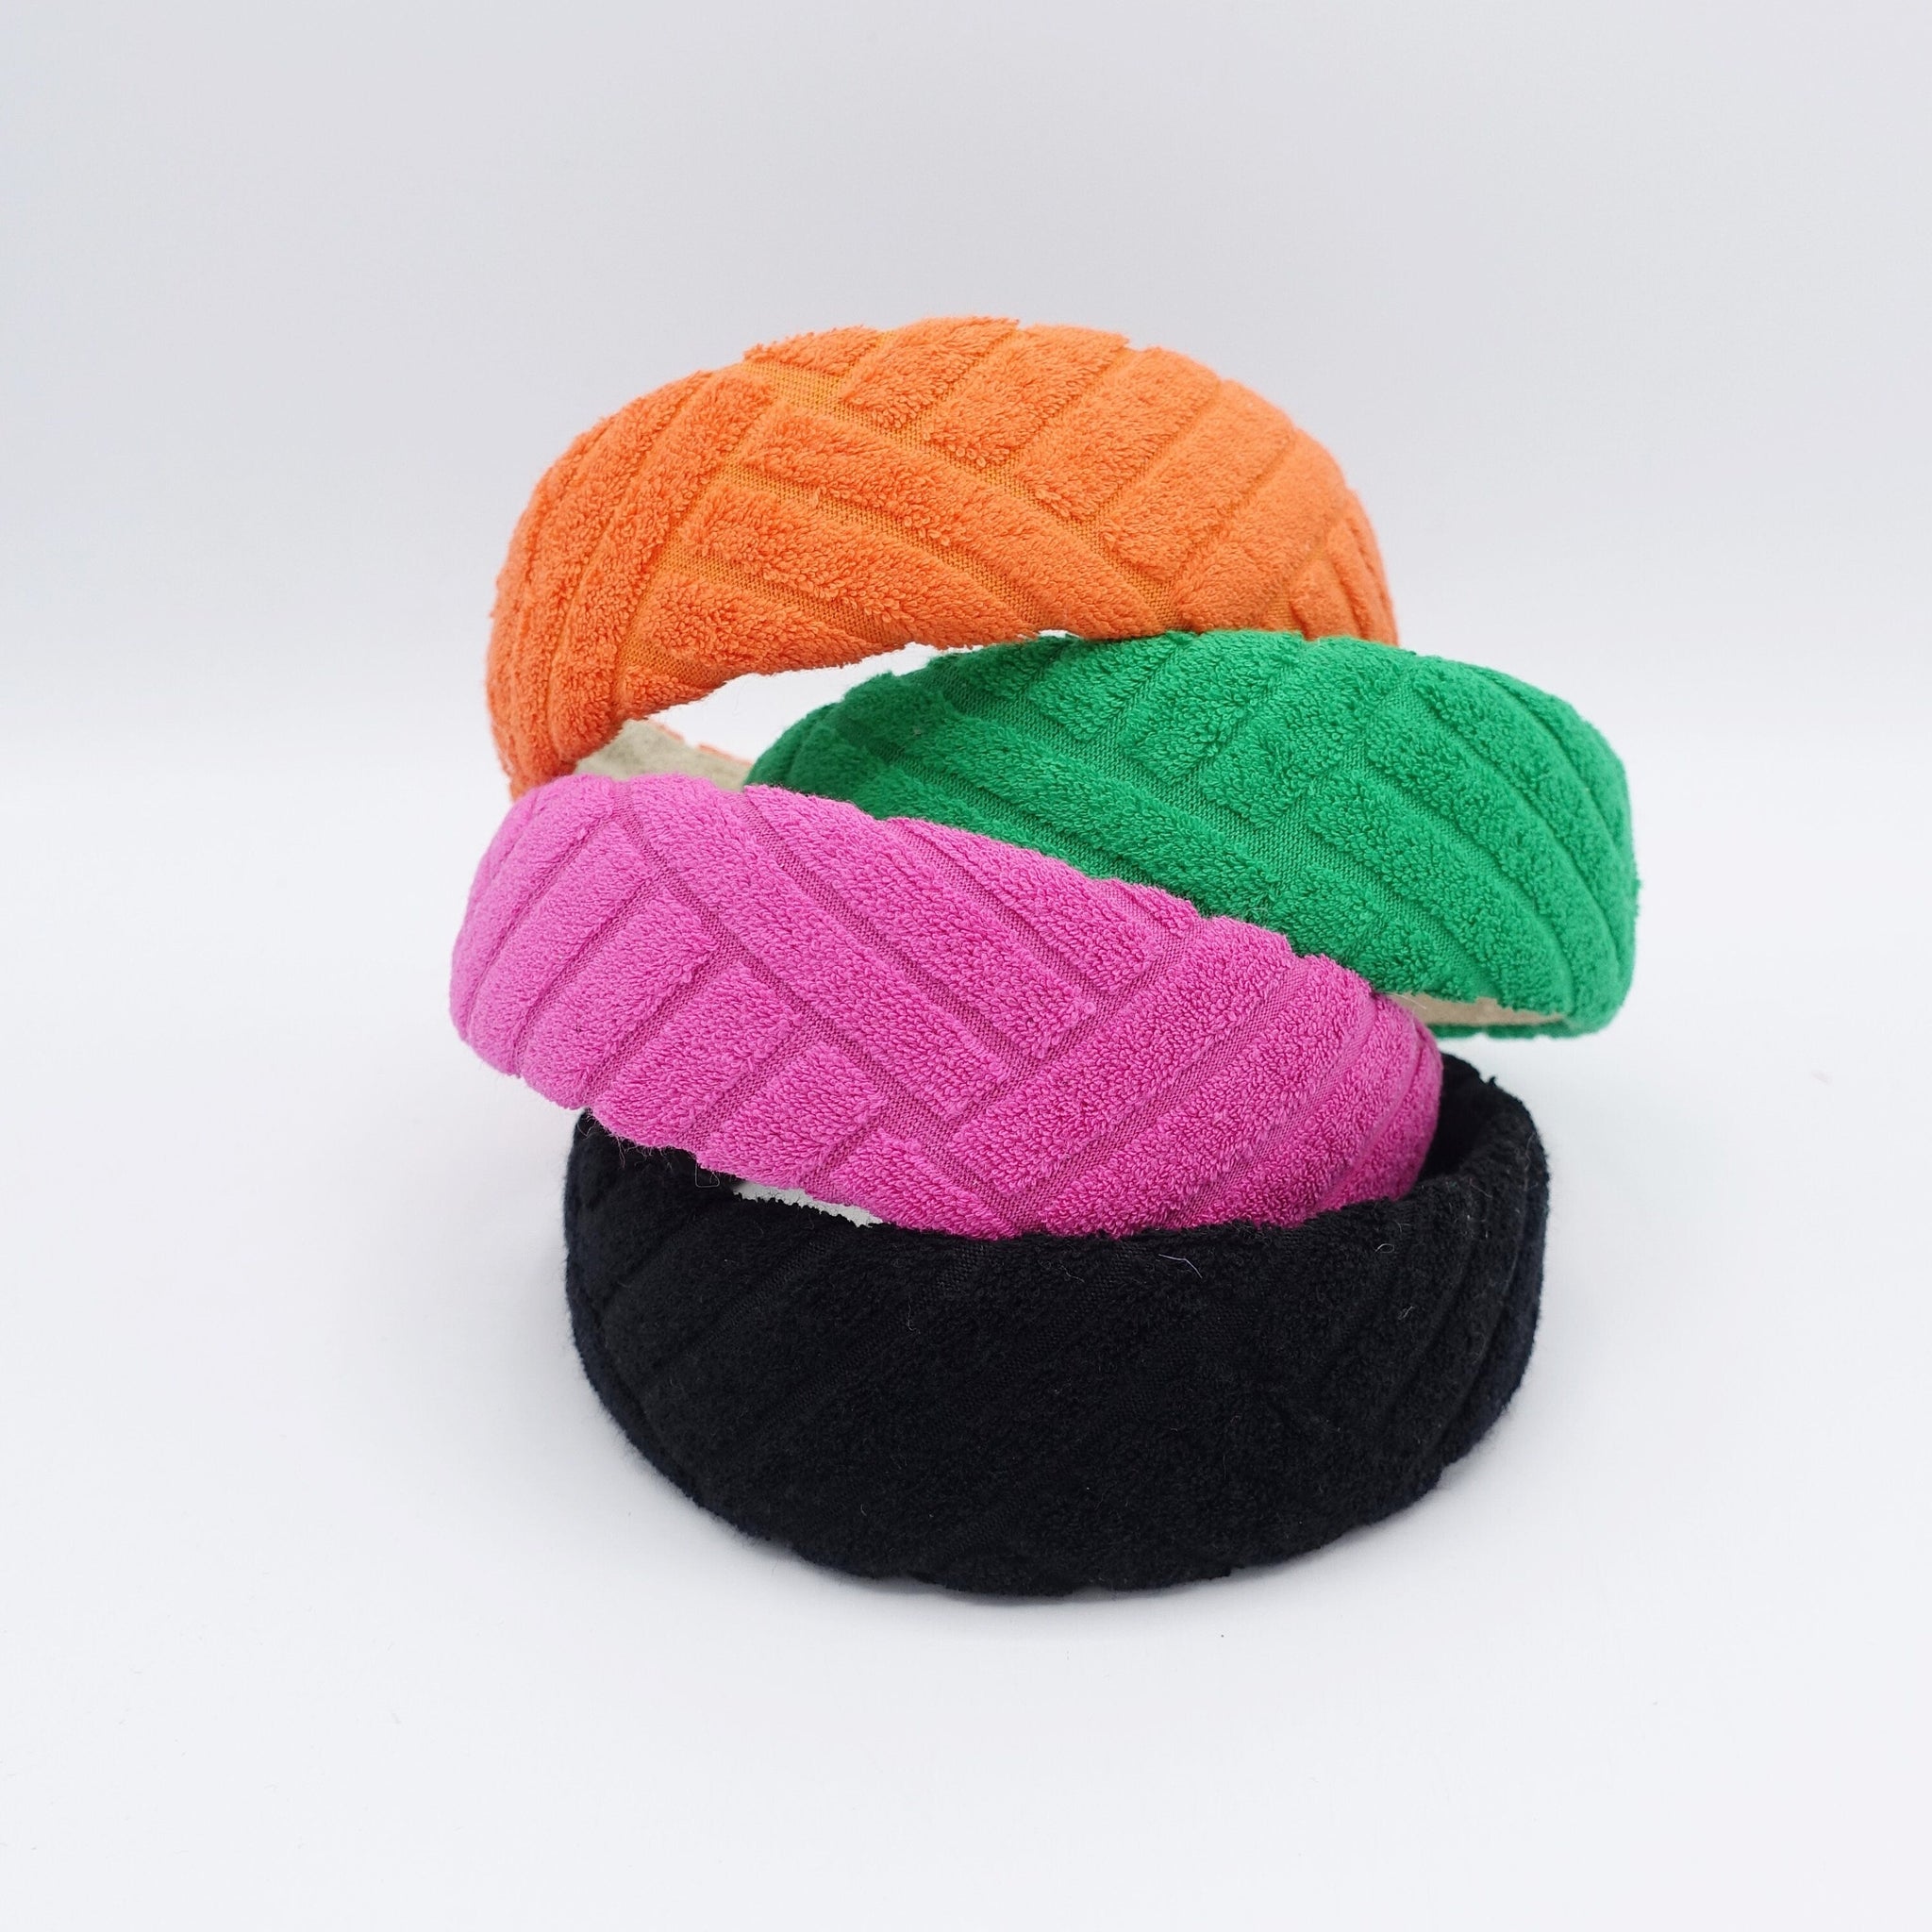 veryshine.com Headband colorful terry headband, padded headband, casual headband for women